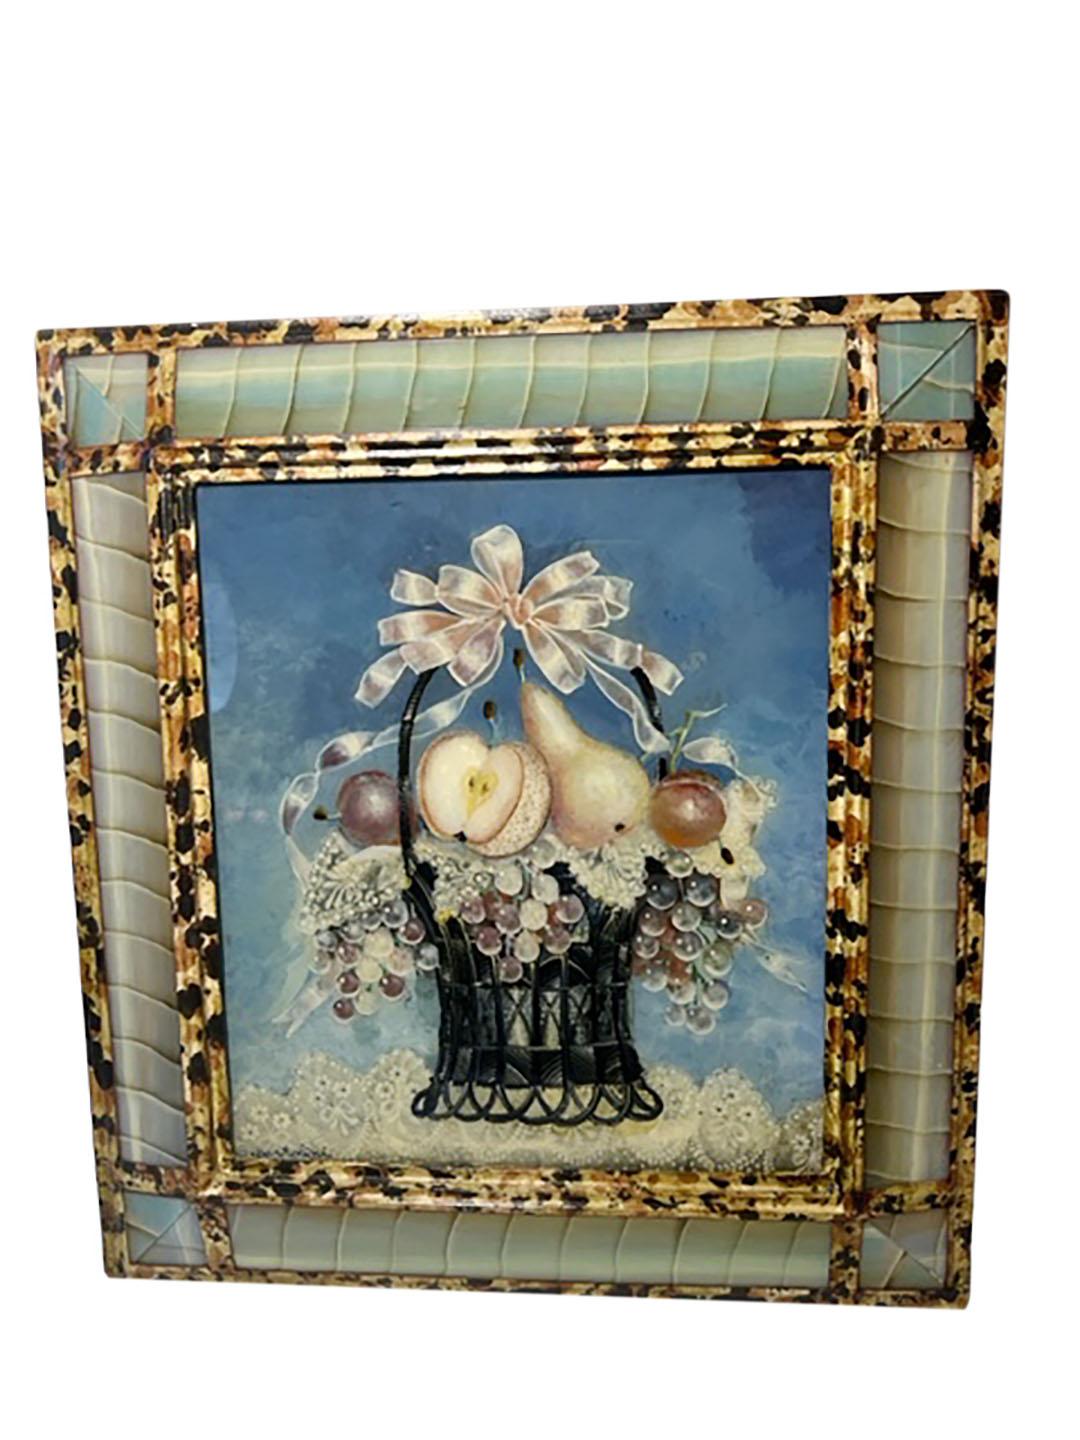 Suzy Bartolini peinture inversée, artiste française née en 1930. Bien connue pour ses peintures inversées de paniers de fleurs et d'individus. Elle a fabriqué des cadres très spéciaux sur mesure. Vers 1950. L'image elle-même mesure 13 pouces sur 11